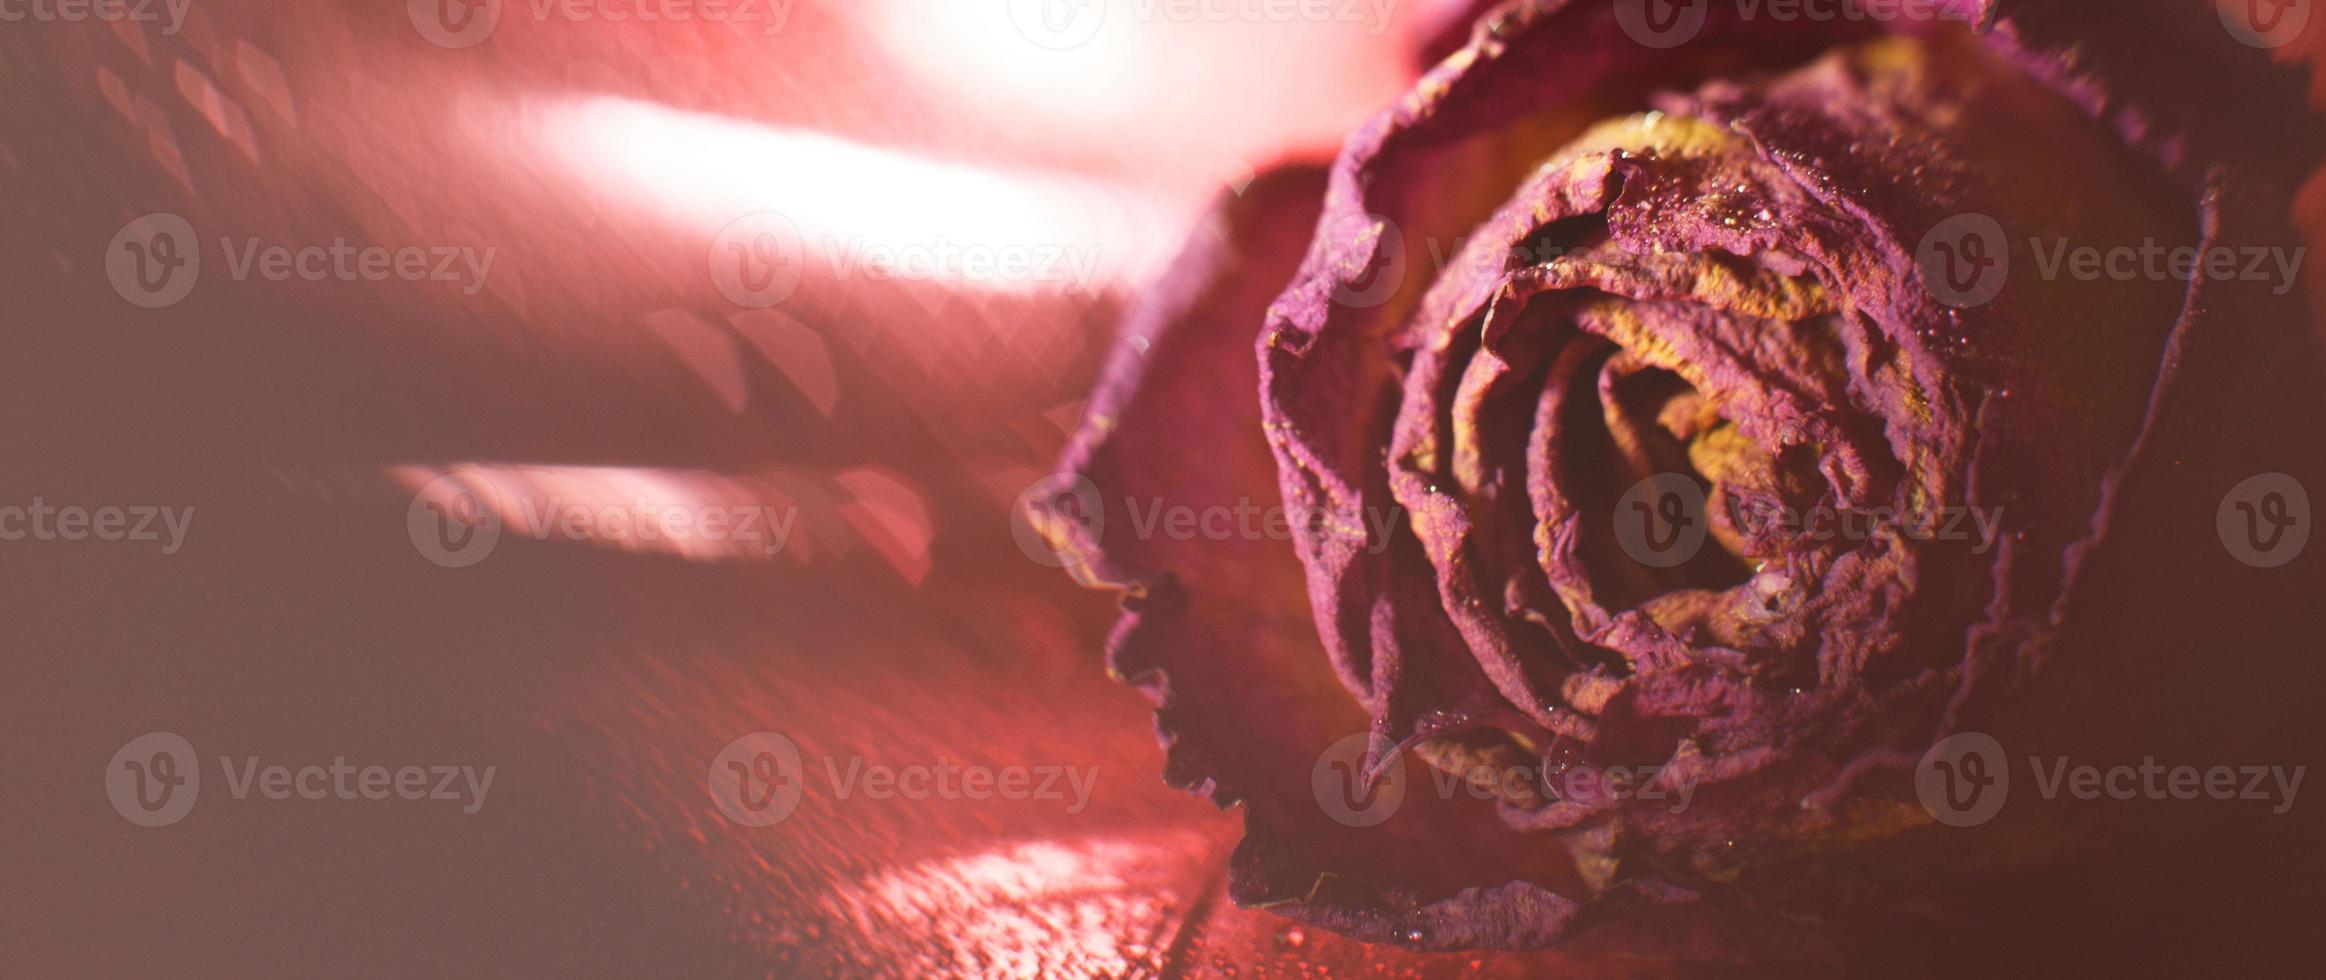 rosa roja seca con gotas de agua sobre un fondo rojo. tarjeta con flor y bokeh foto